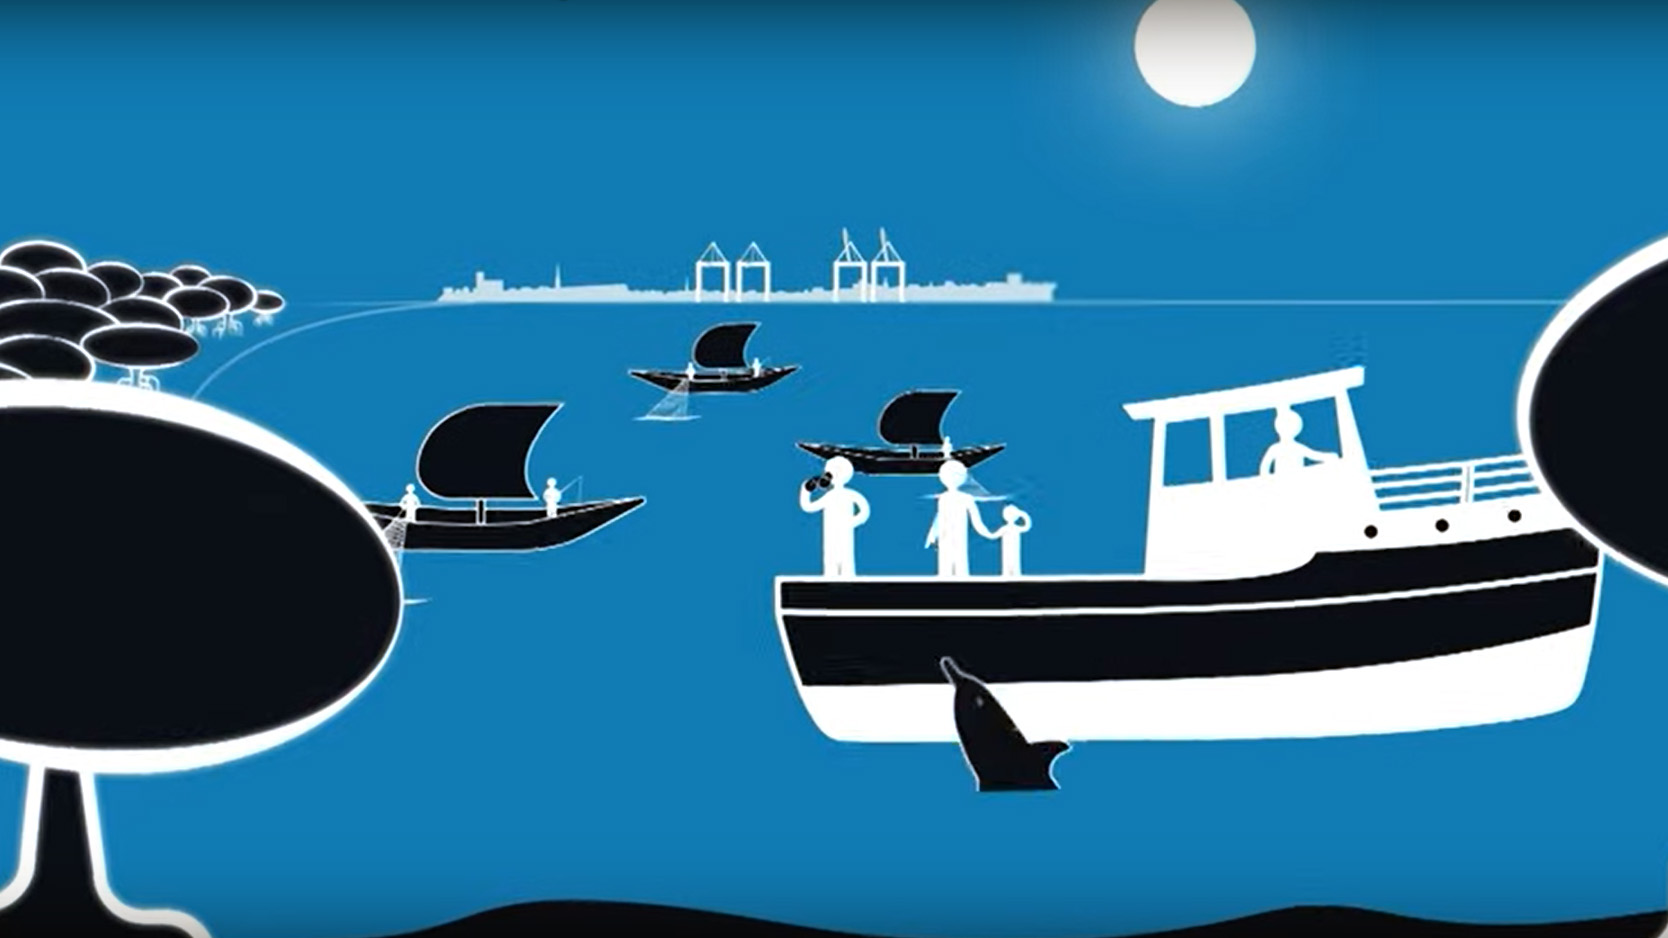 Standbild aus dem Video "Ocean 4 Life – Naturbasierte Lösungen für Mensch und Umwelt"